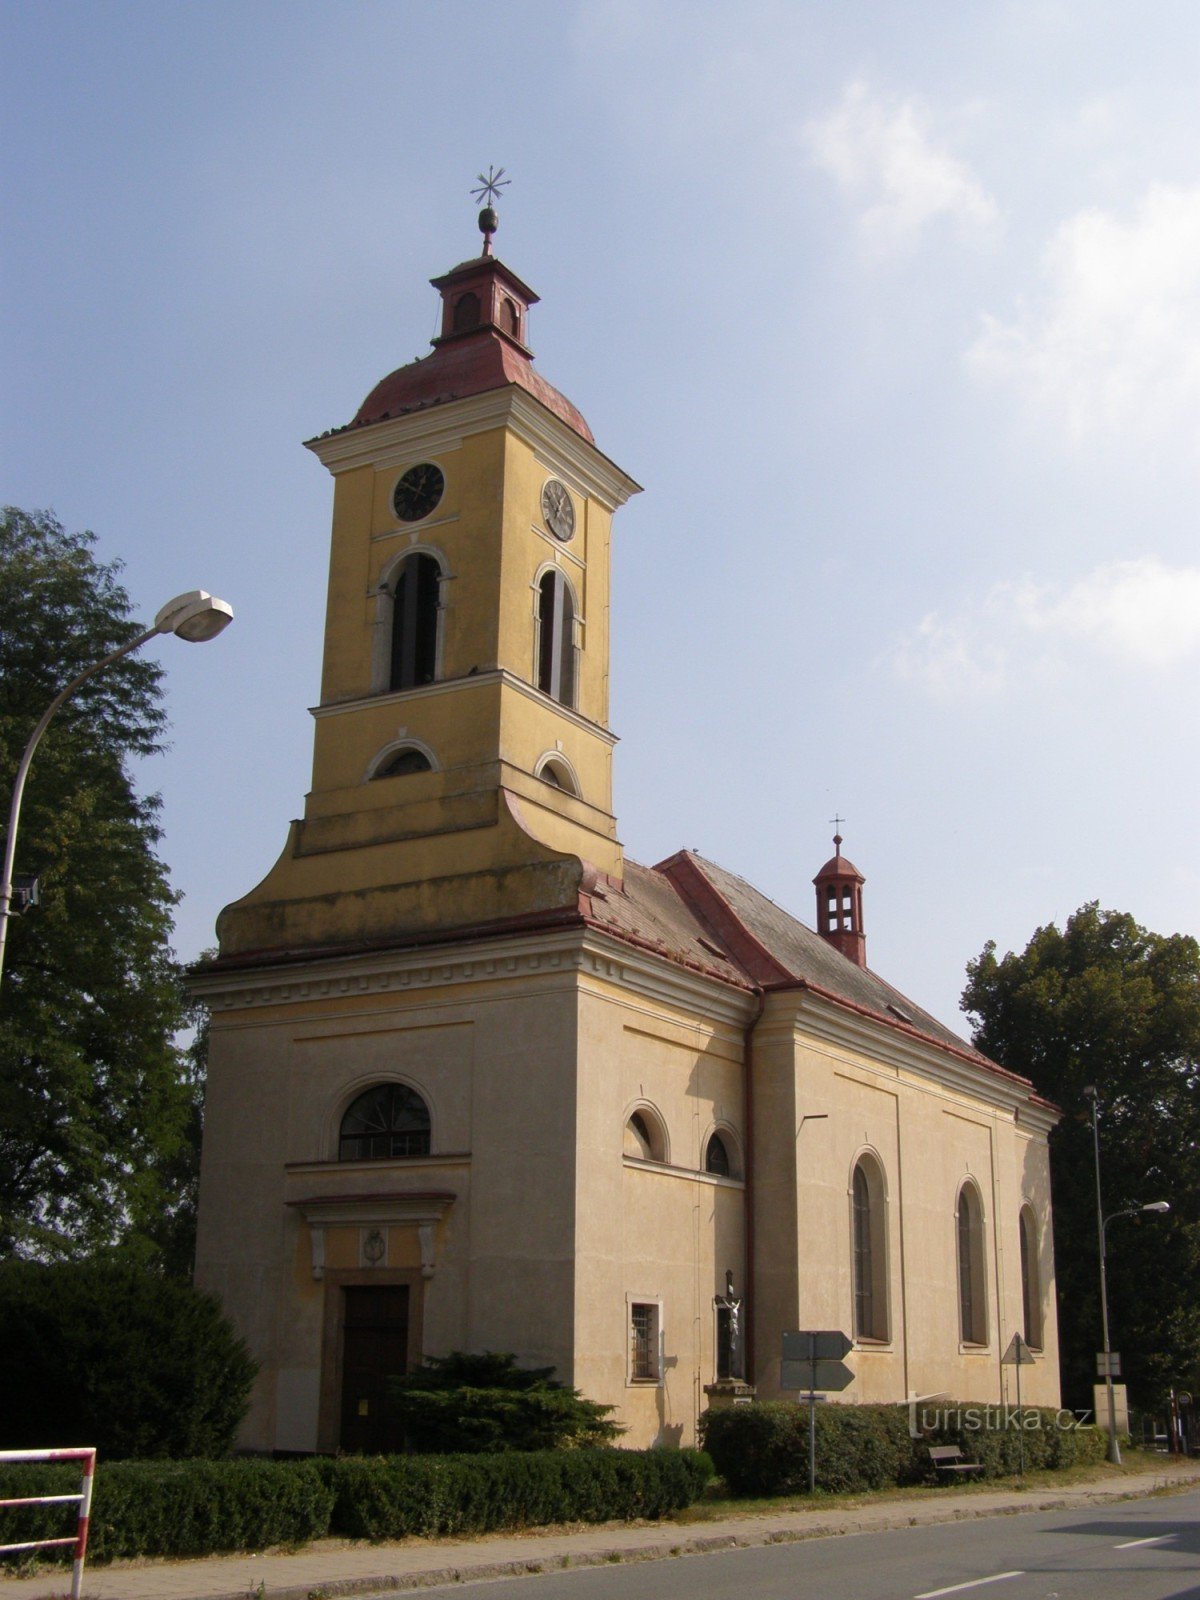 Štězery - crkva sv. Ocjena